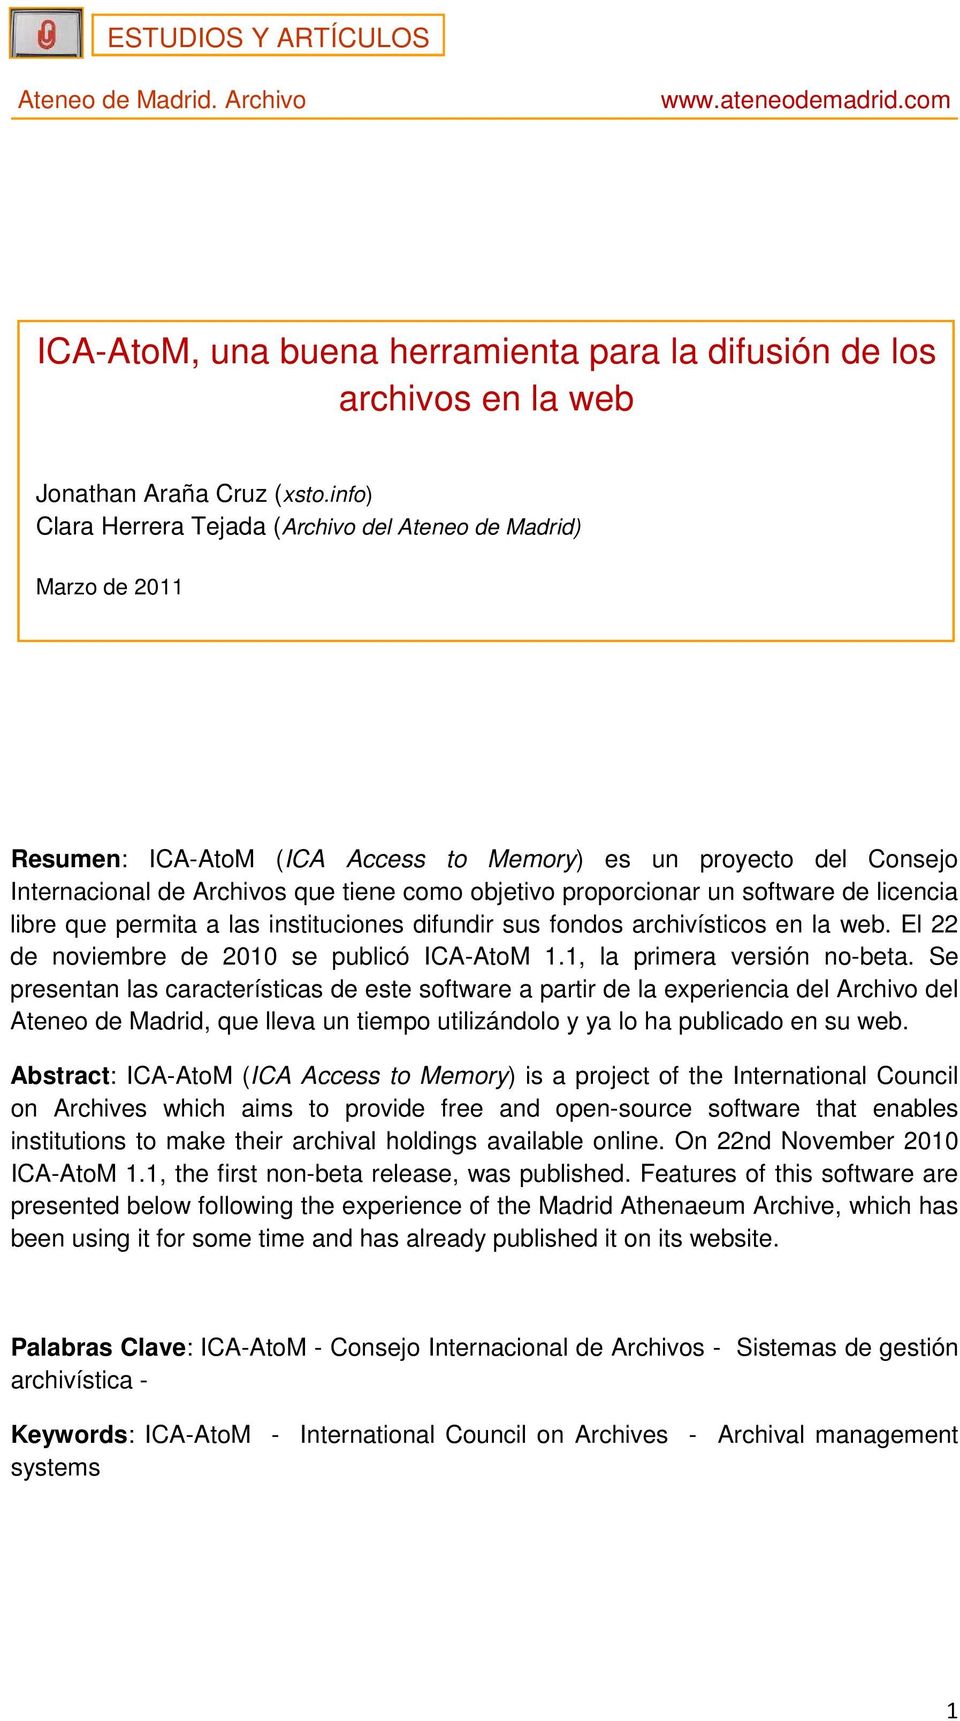 proporcionar un software de licencia libre que permita a las instituciones difundir sus fondos archivísticos en la web. El 22 de noviembre de 2010 se publicó ICA-AtoM 1.1, la primera versión no-beta.